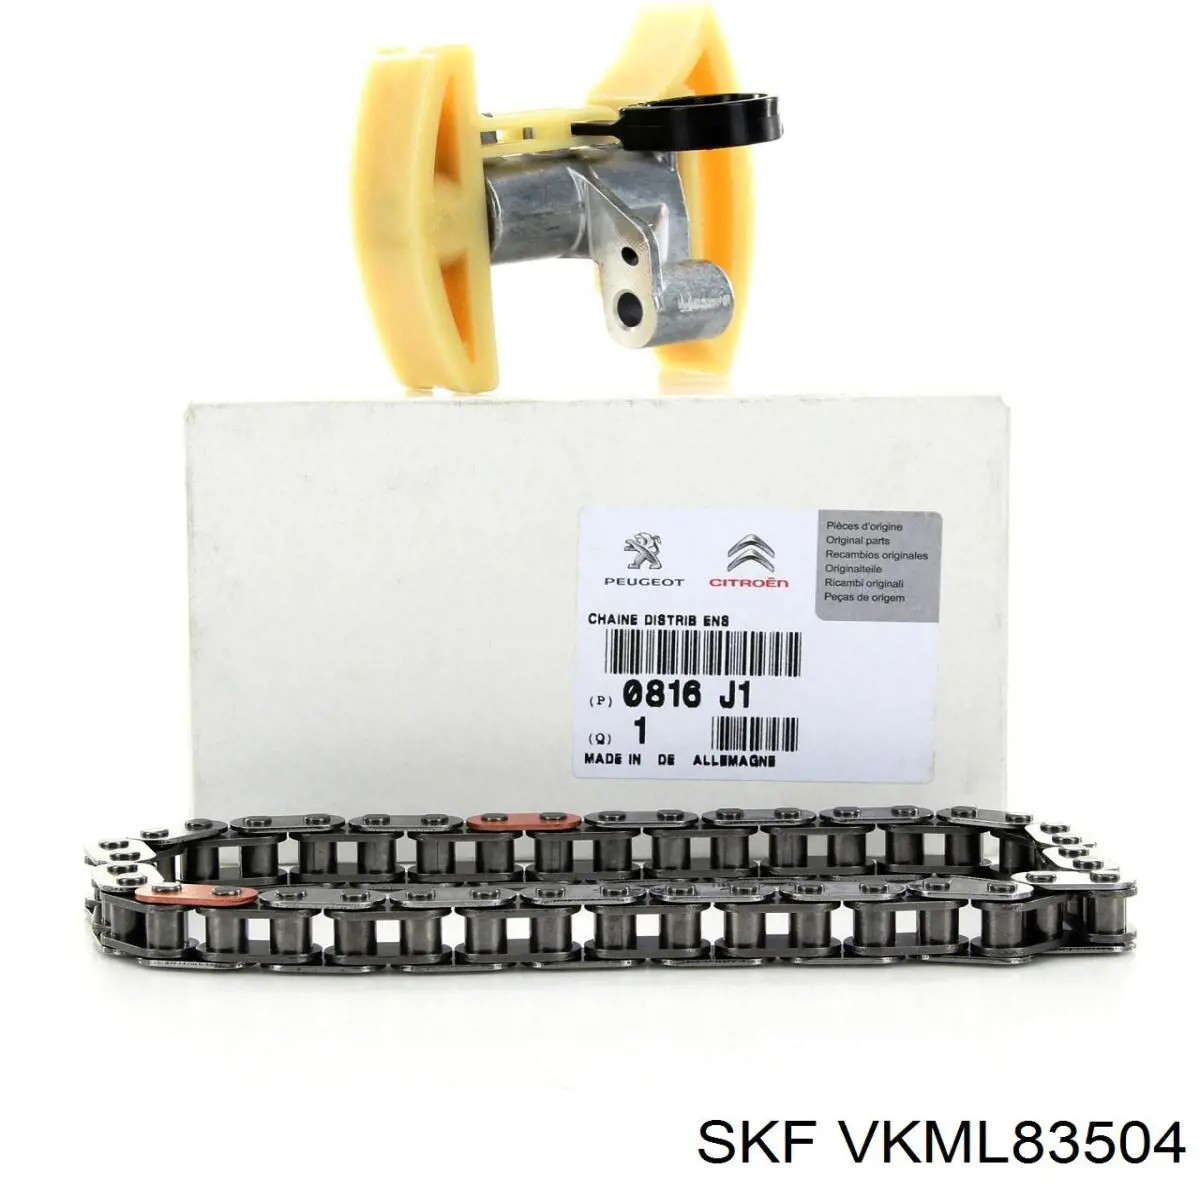 VKML83504 SKF ланцюг грм, комплект